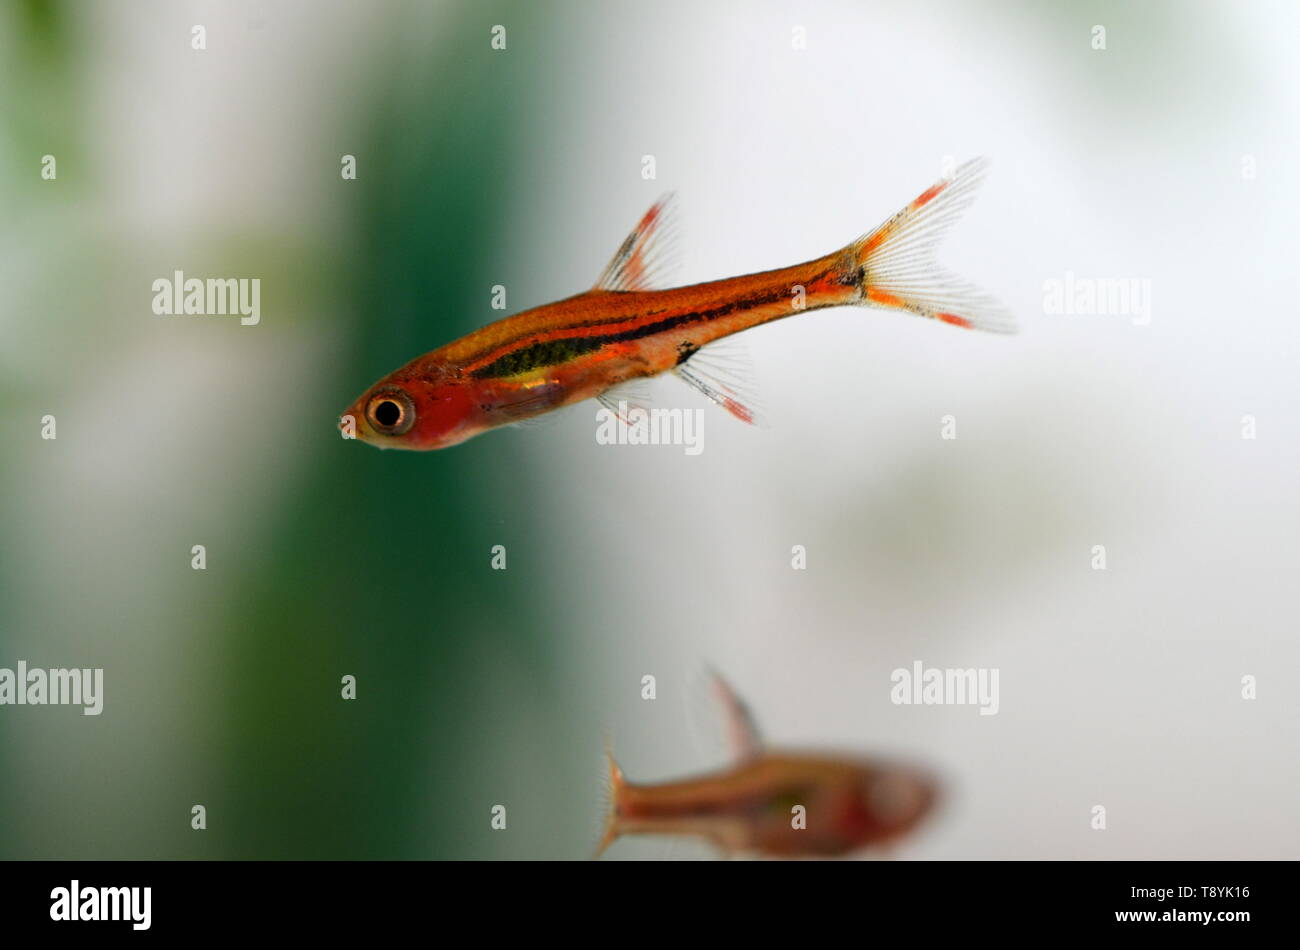 Boraras Brigitta aquarium mini fish from Borneo, Indonesia, close up Stock Photo